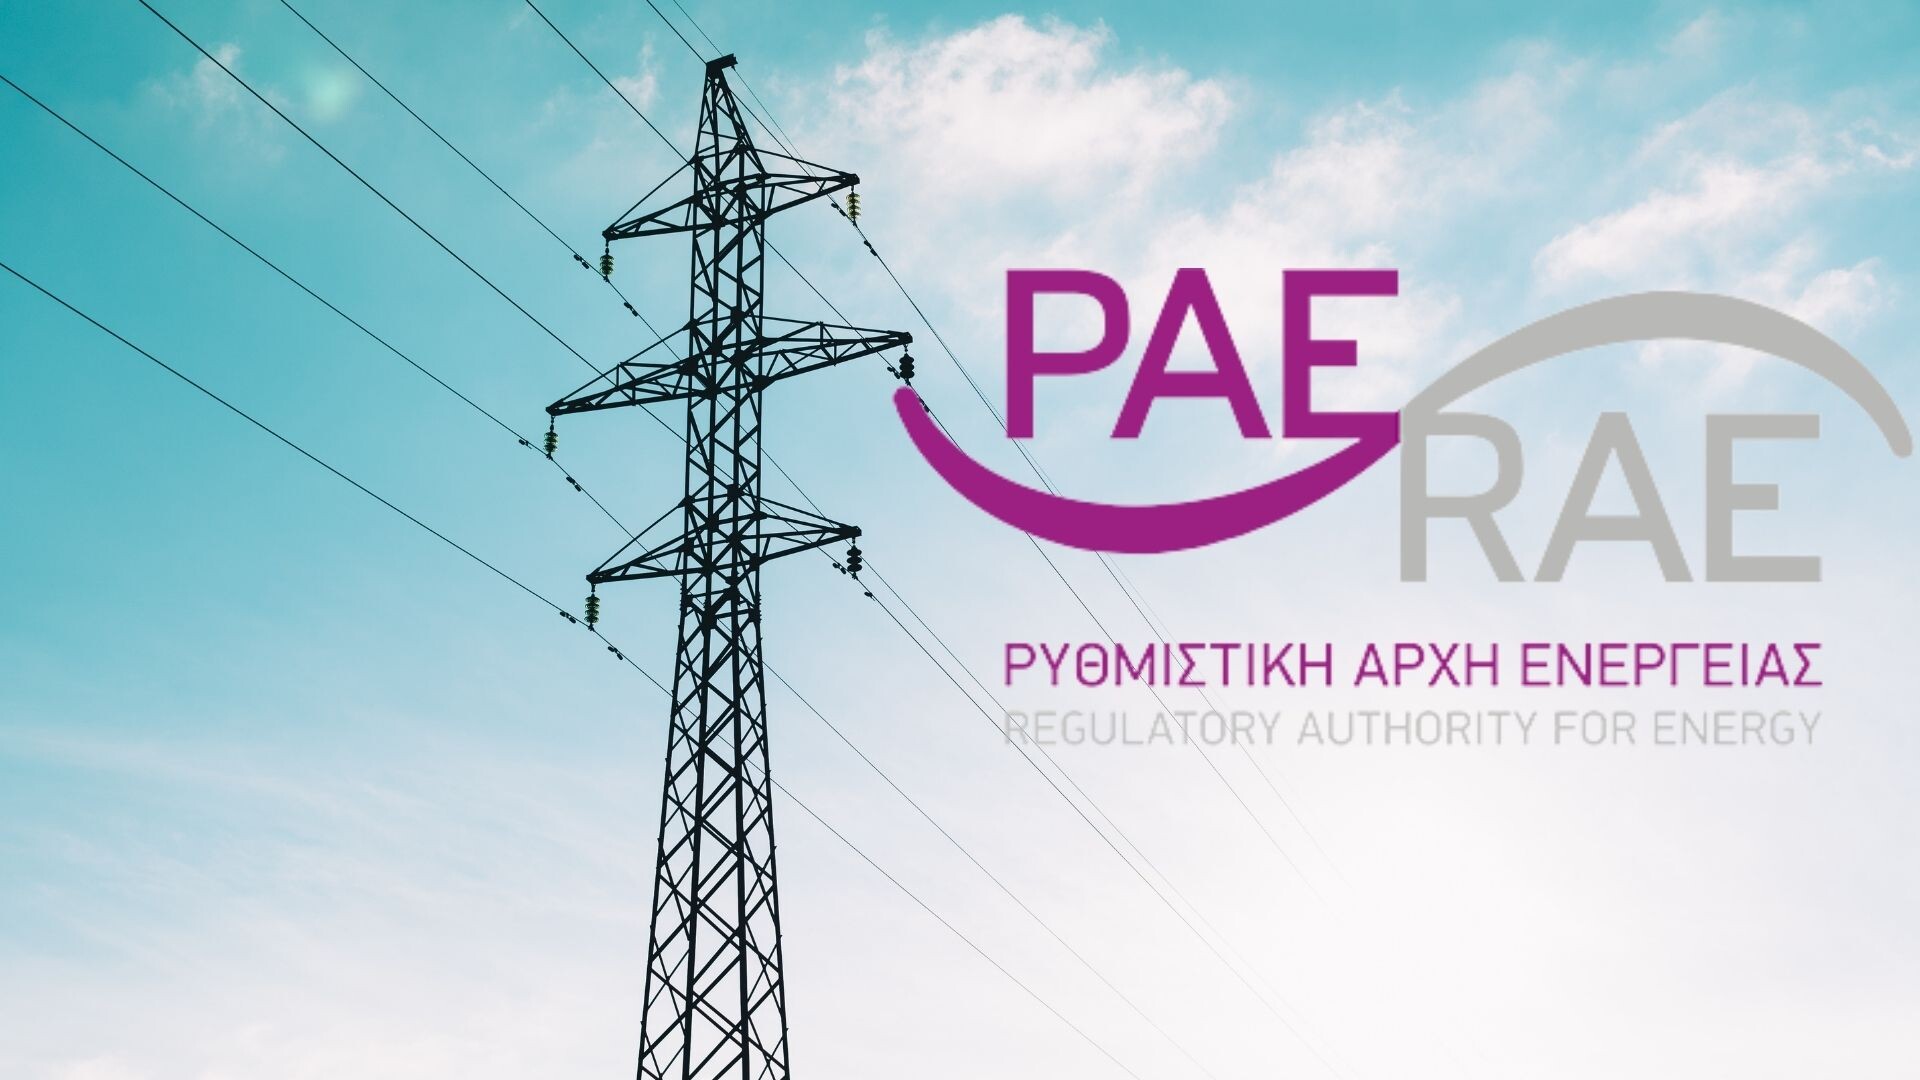 More information about "ΡΑΕ: Αποζημιώσεις από τη ΔΕΔΔΗΕ σε καταναλωτές για περιπτώσεις διακοπής ηλεκτροδότησης μεγάλης διάρκειας"